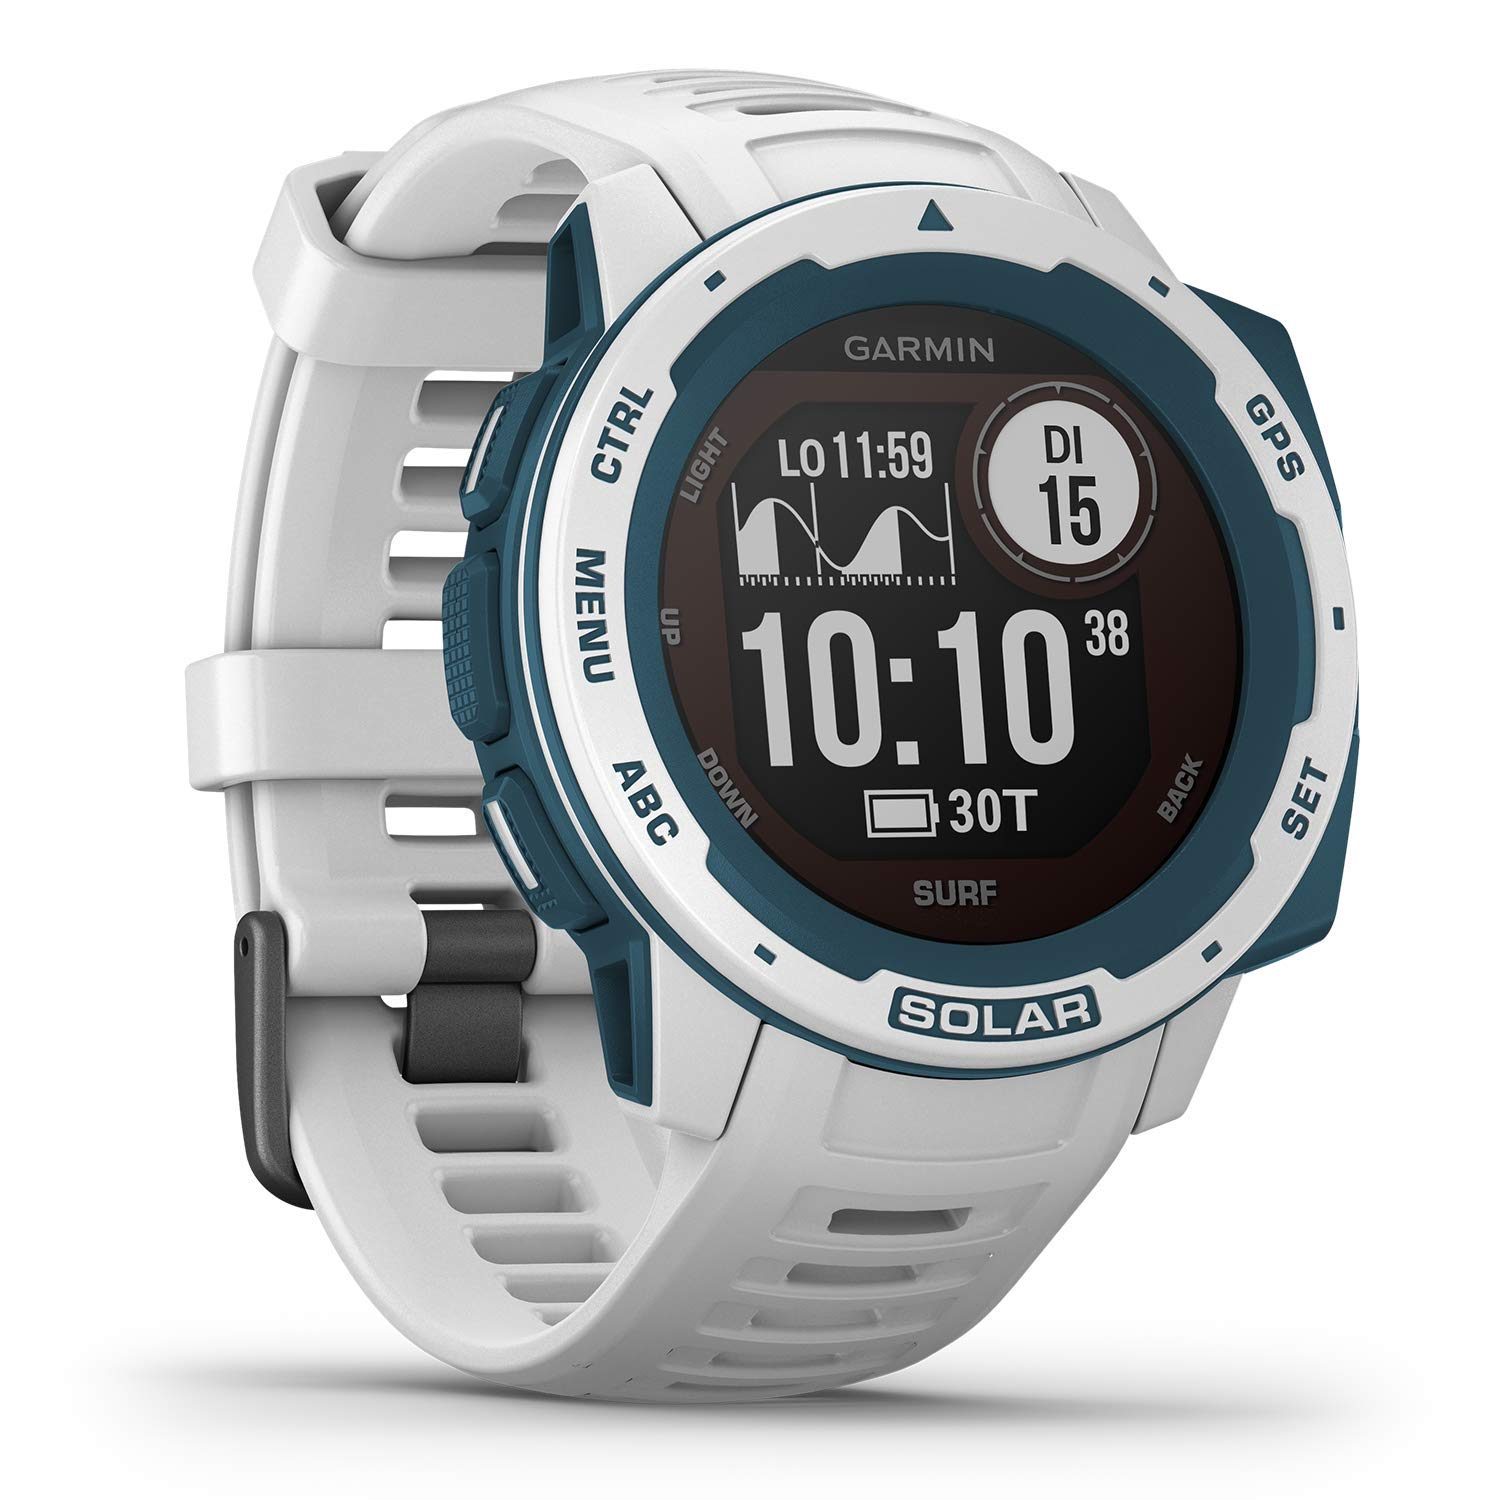 Garmin Instinct - wasserdichte GPS-Smartwatch mit Sport-/Fitnessfunktionen. Herzfrequenzmessung, Fitness Tracker und Smartphone Benachrichtigungen. Viele Modelle zur Auswahl (Generalüberholt)